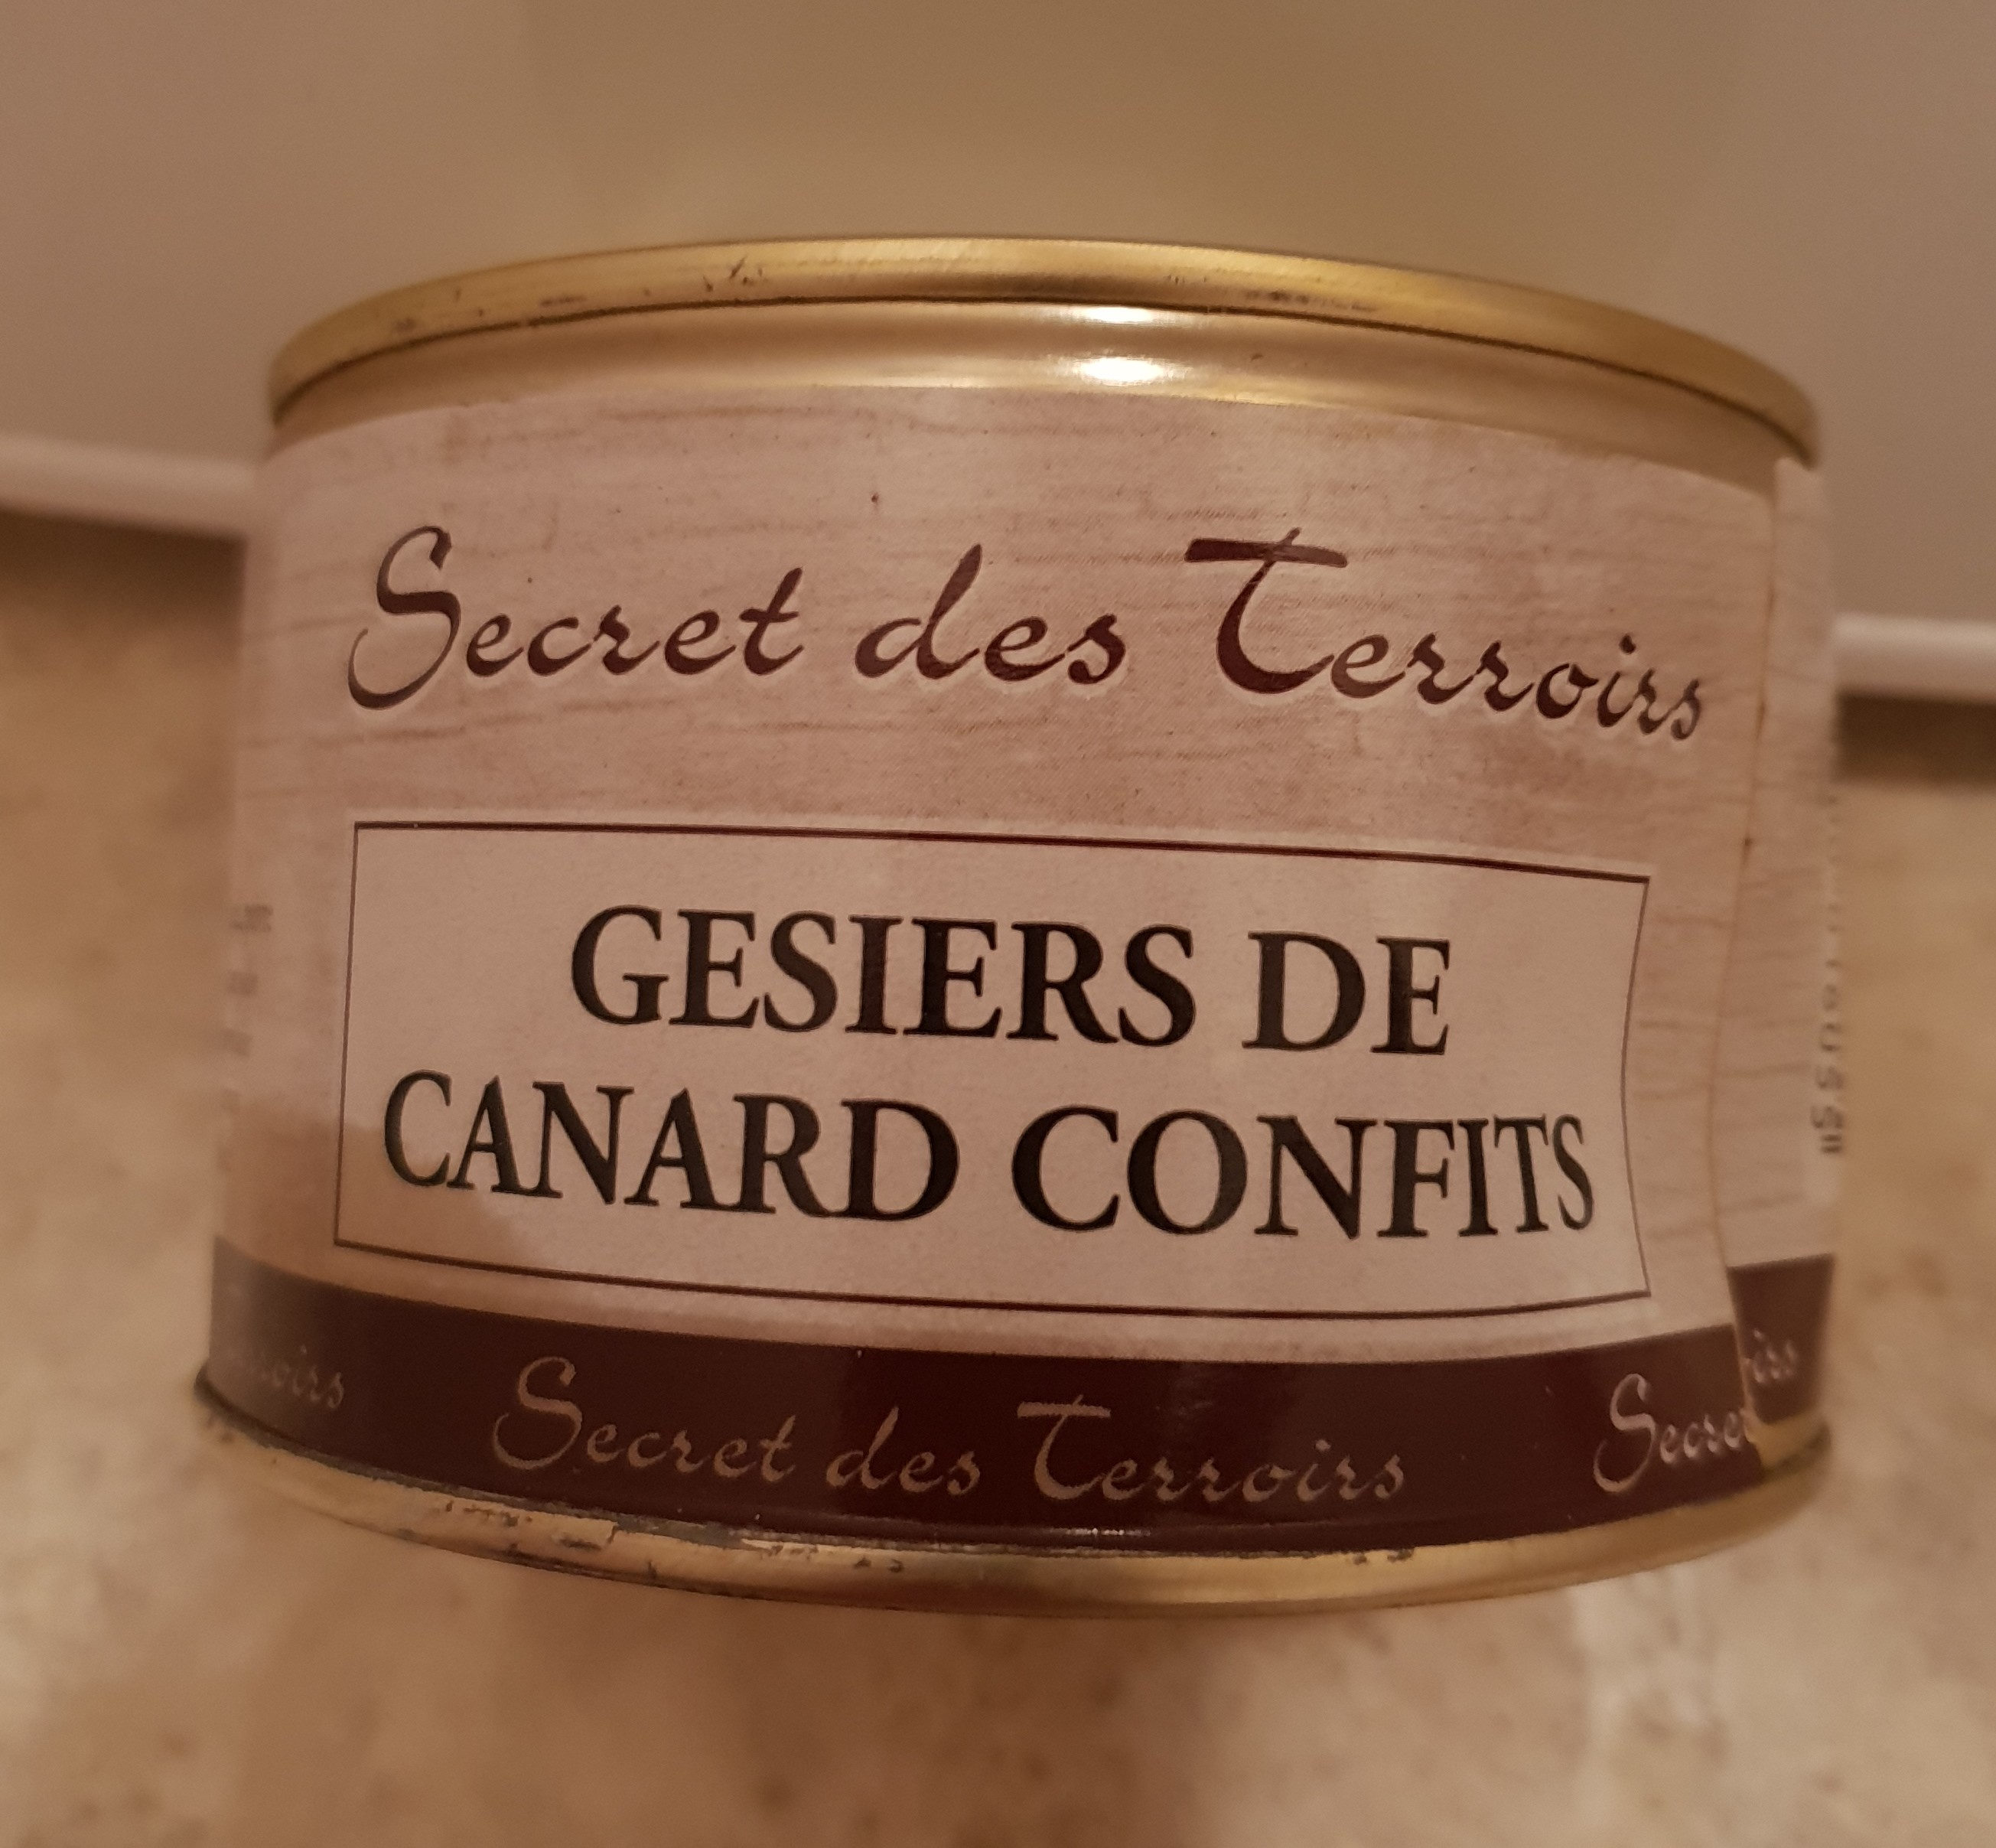 Gesiers de canard confits - Product - fr